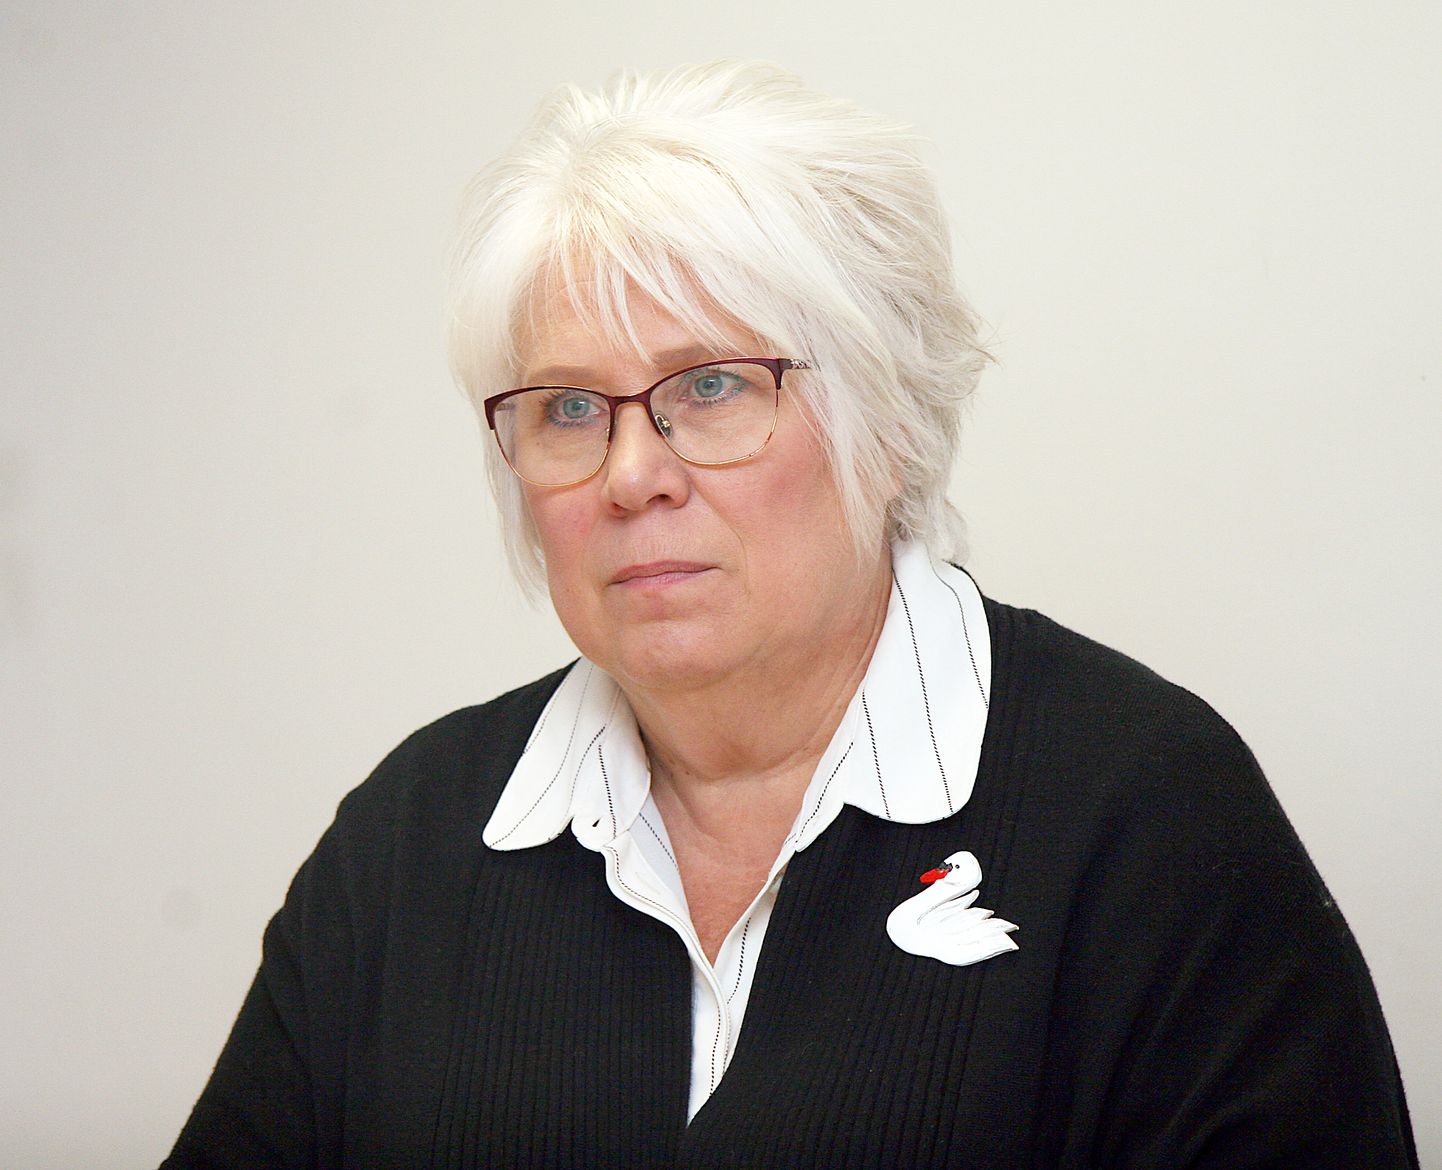 Марина Кальюранд, депутат Европарламента, социал-демократ.